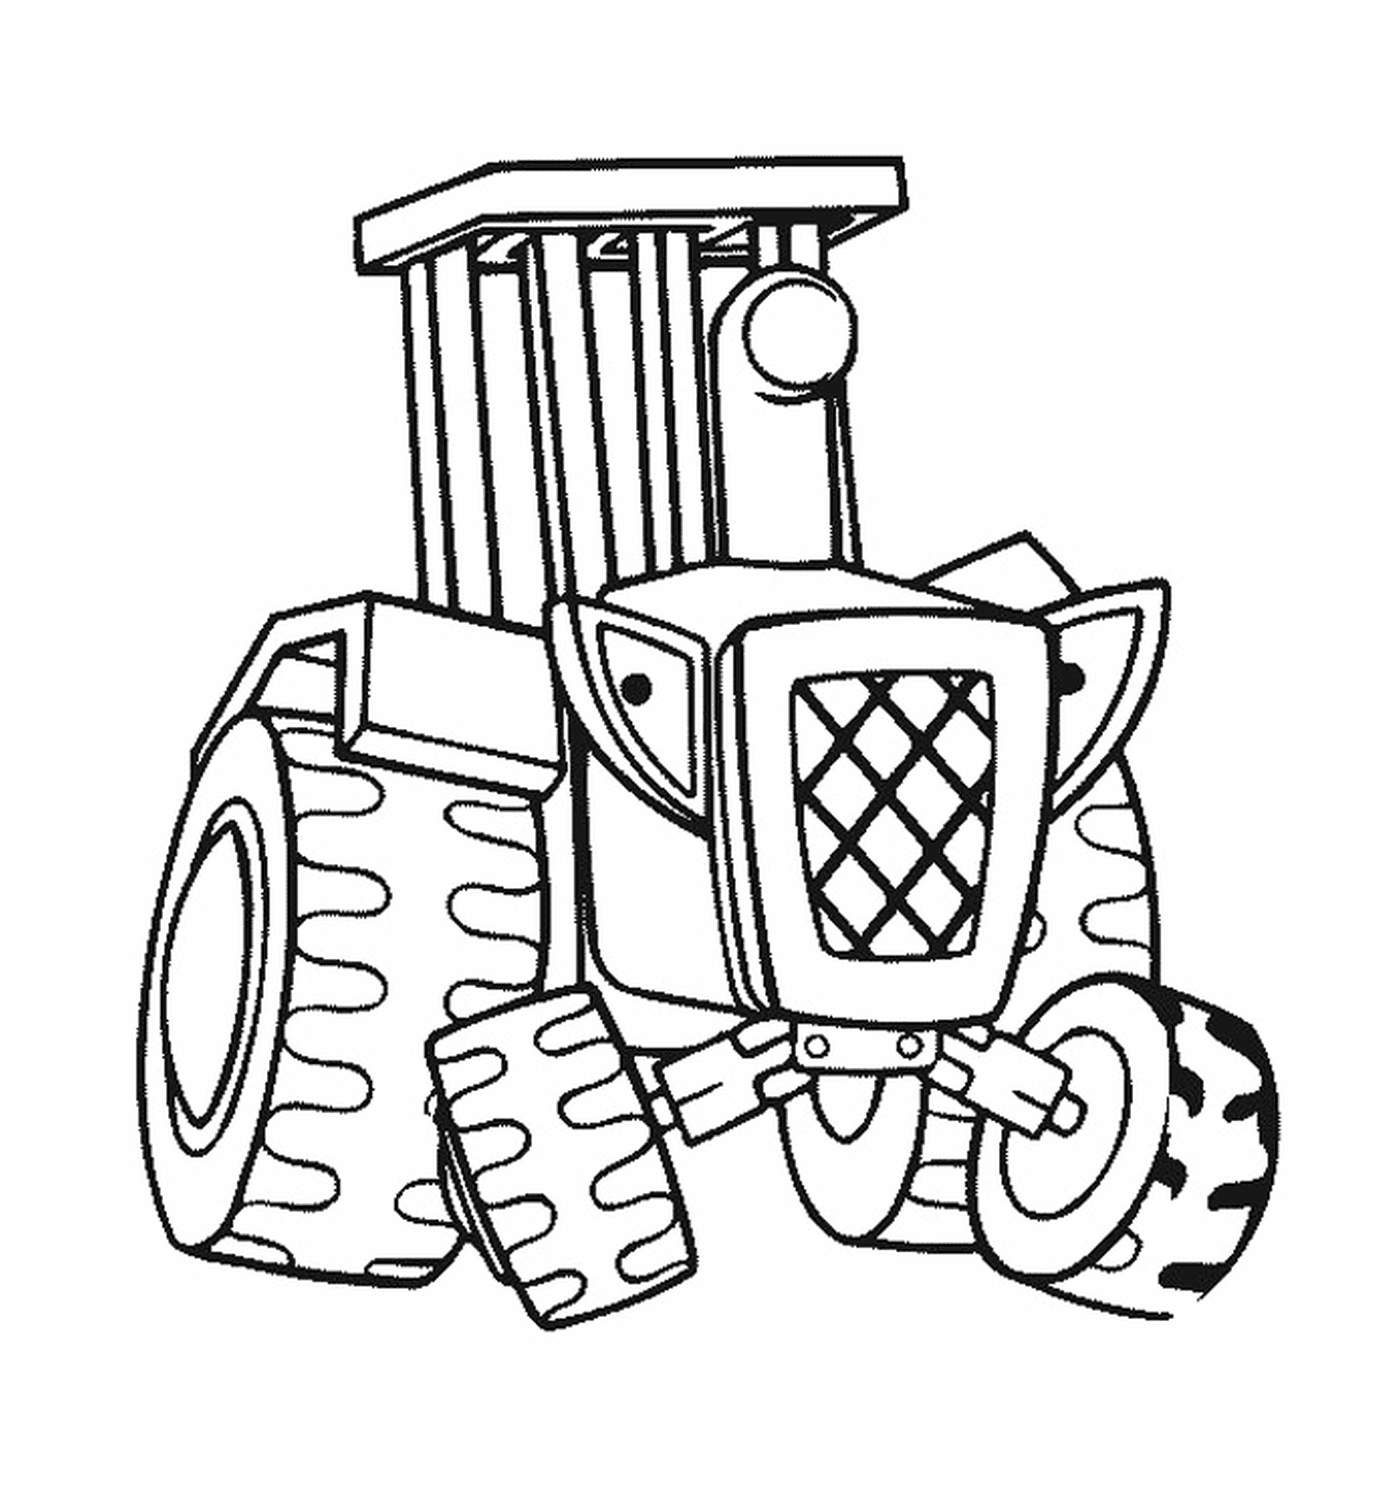  Ein Traktor, der in einer Zeichnung dargestellt ist 